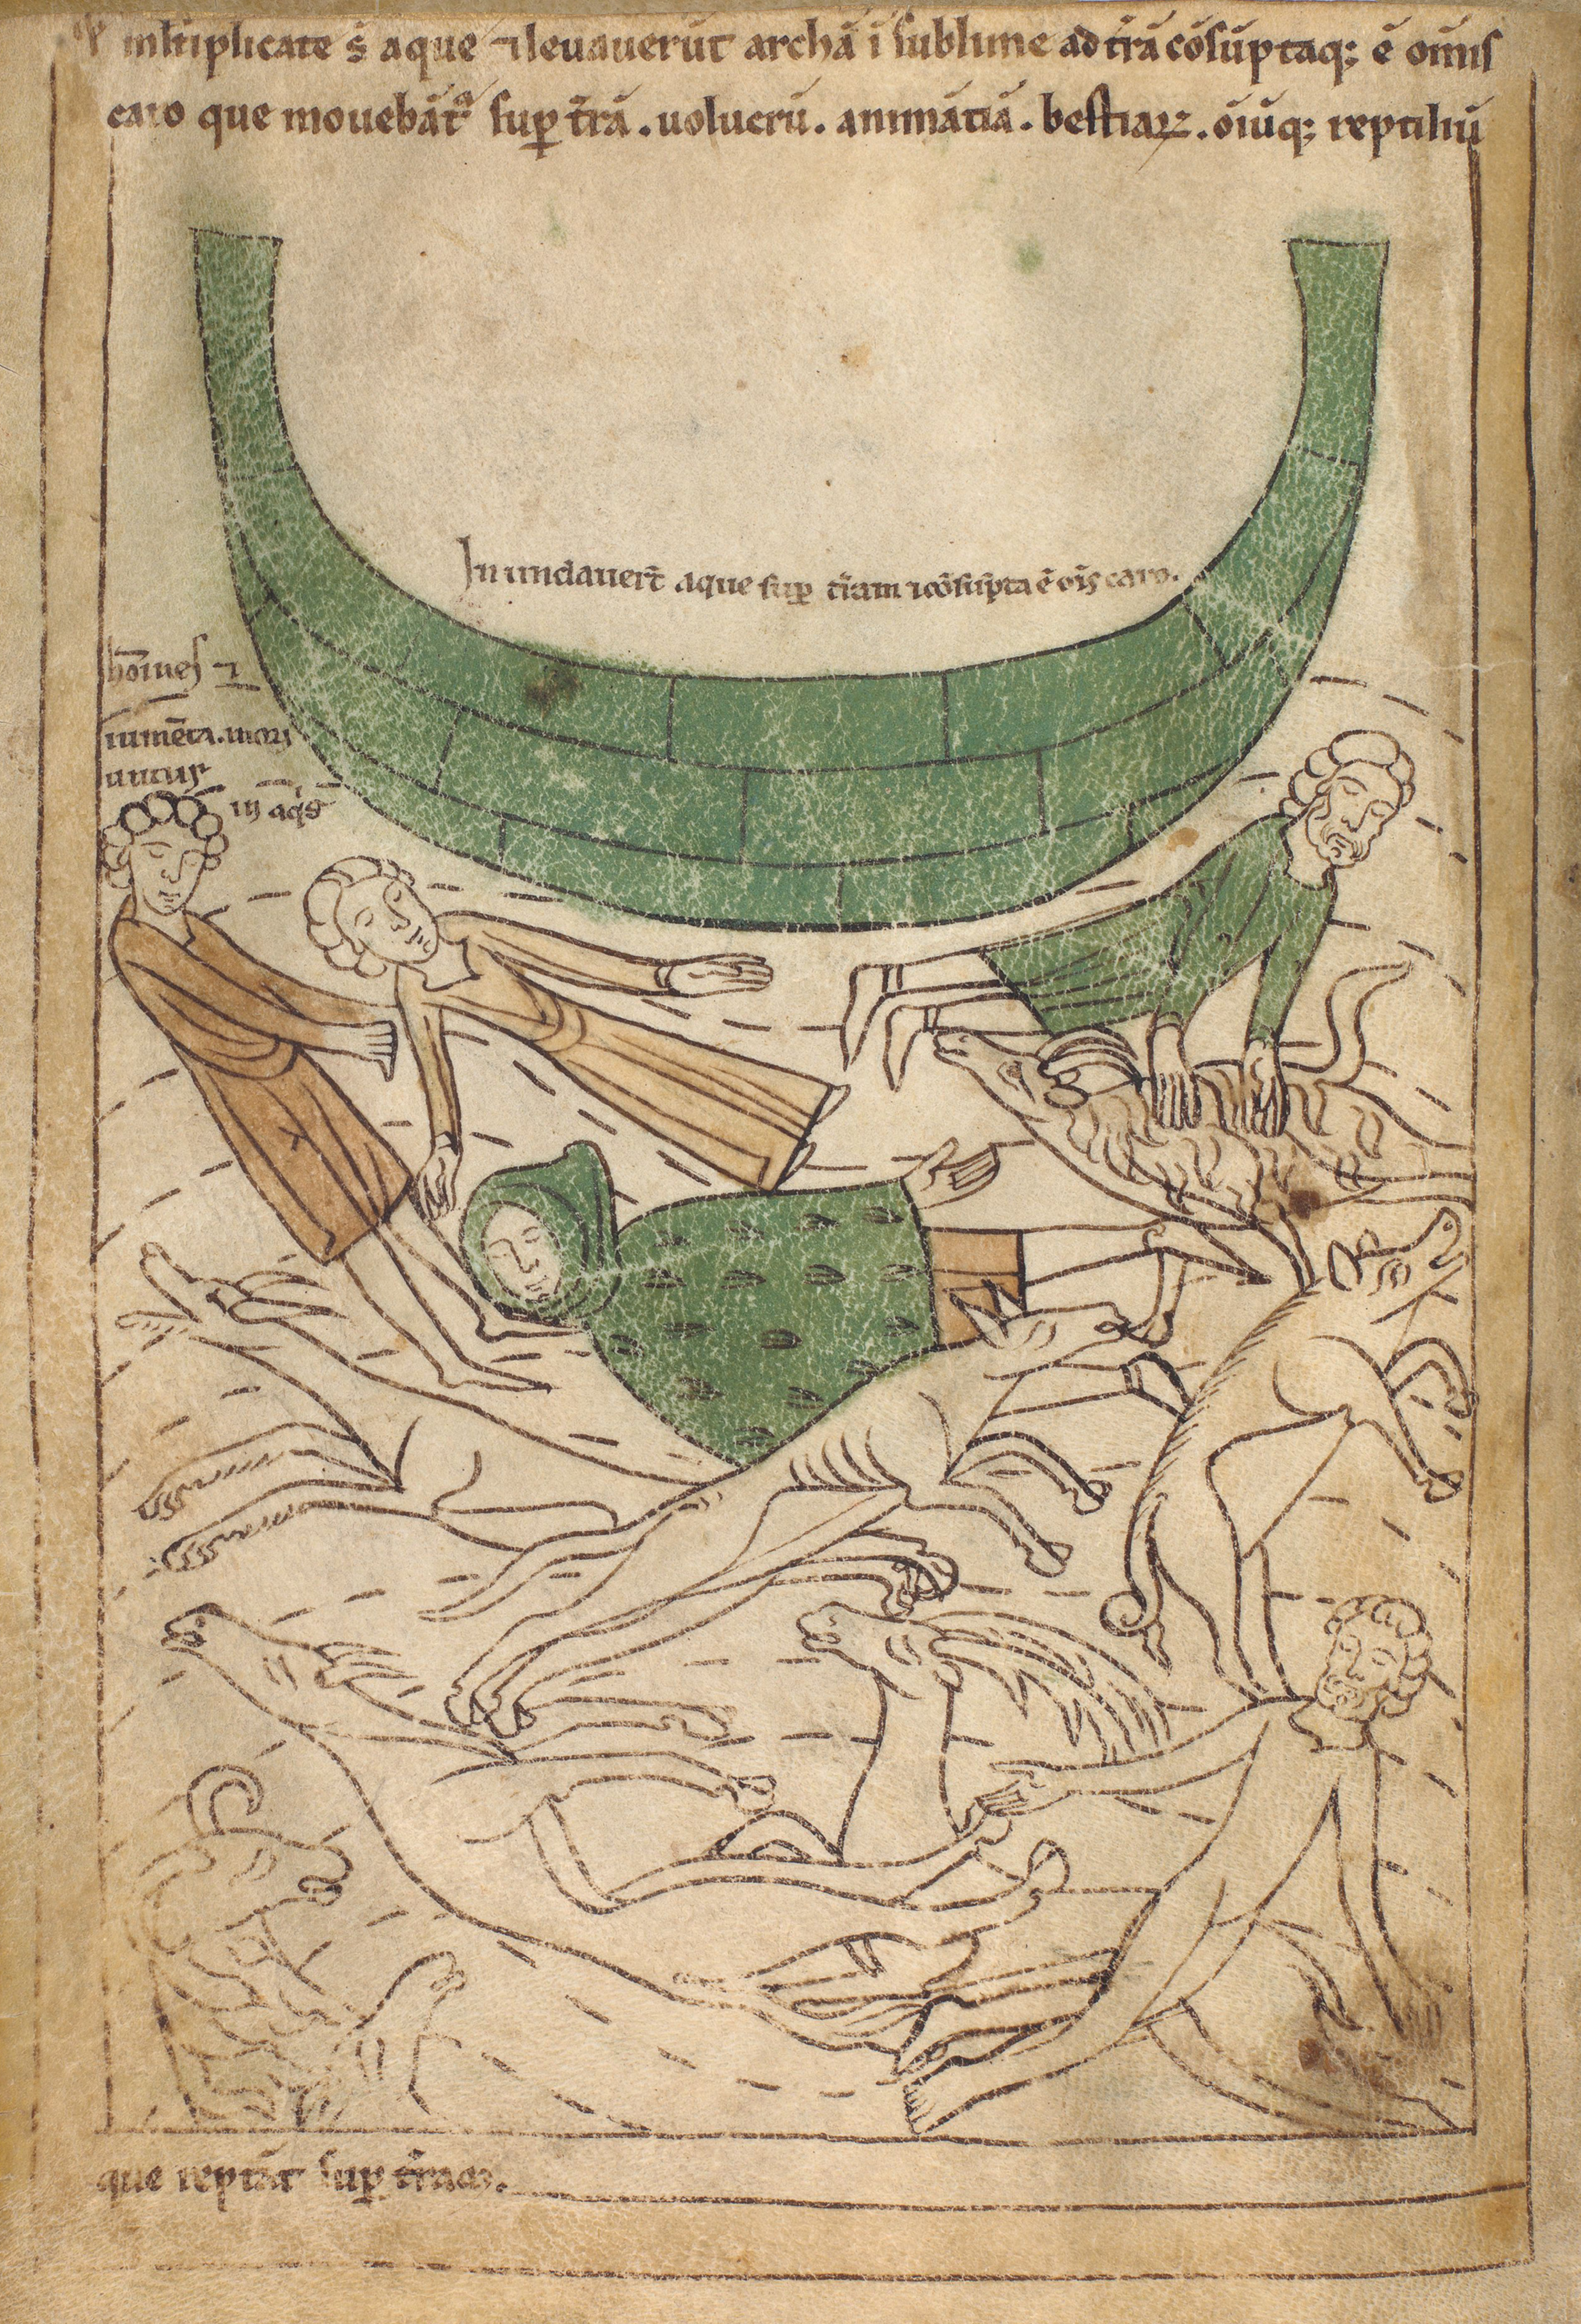 Seconde Bible de Pampelune, folio 9v – Le déluge, l’arche est soulevée par les eaux, toute vie disparaît sur la terre (Gn 7, 17-24).